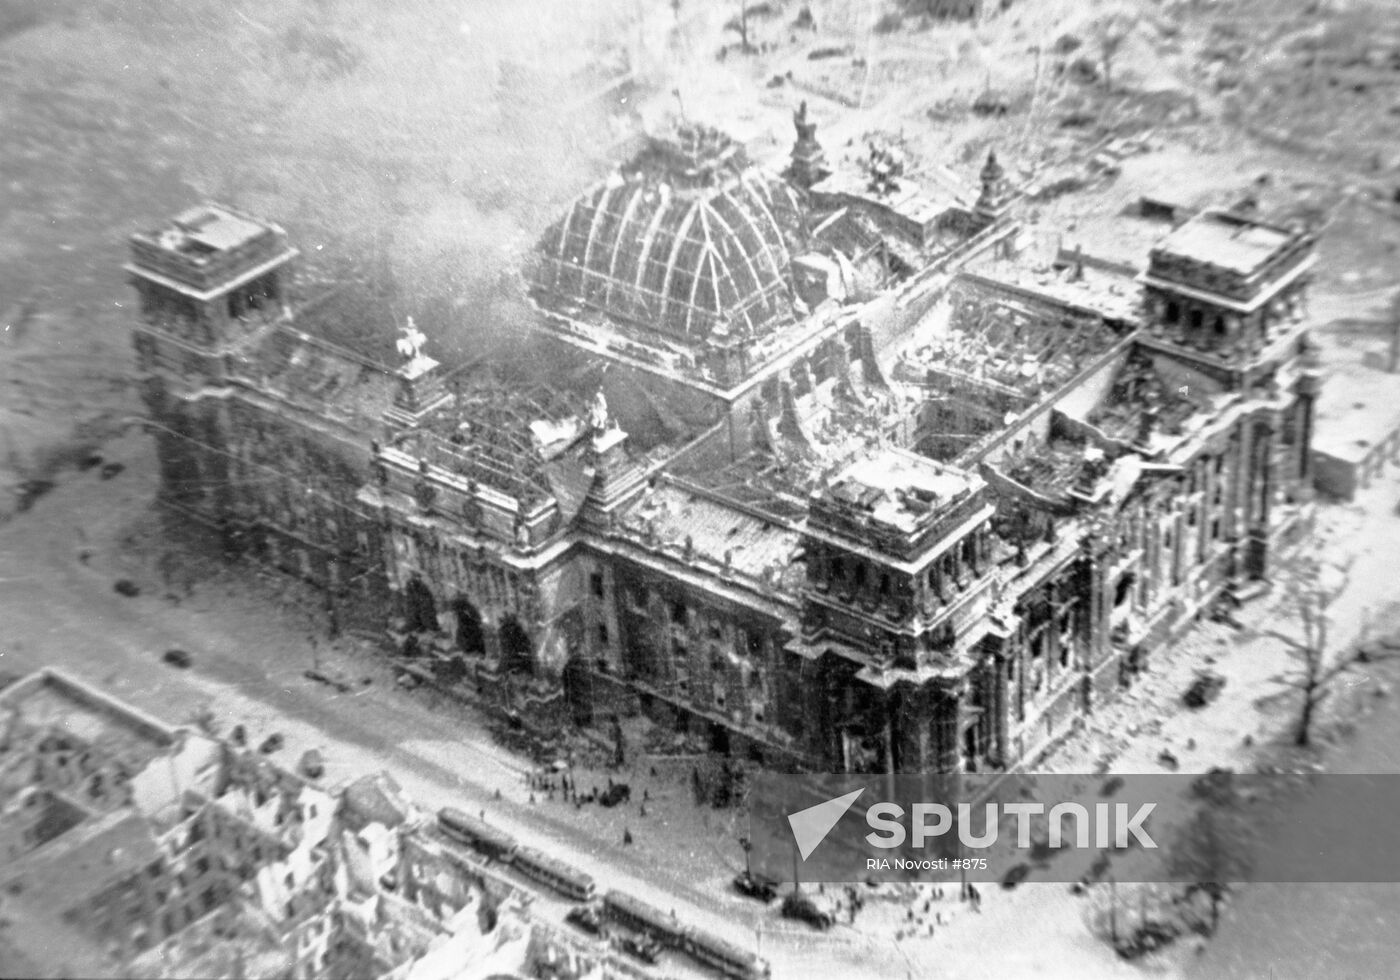 DESTROYED REICHSTAG BERLIN